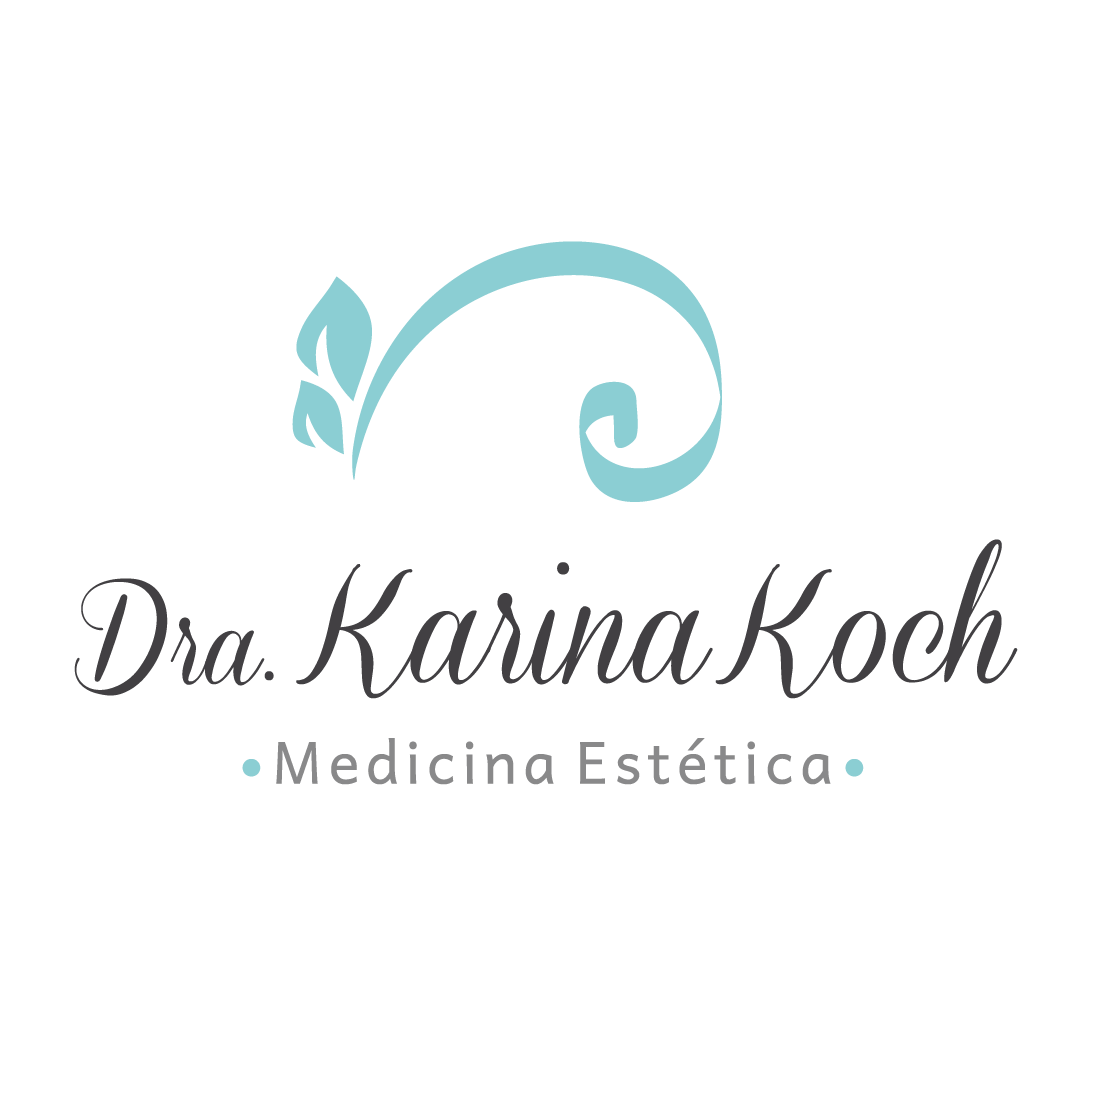 Dra. Karina Koch - Medicina Estética - MN 169365